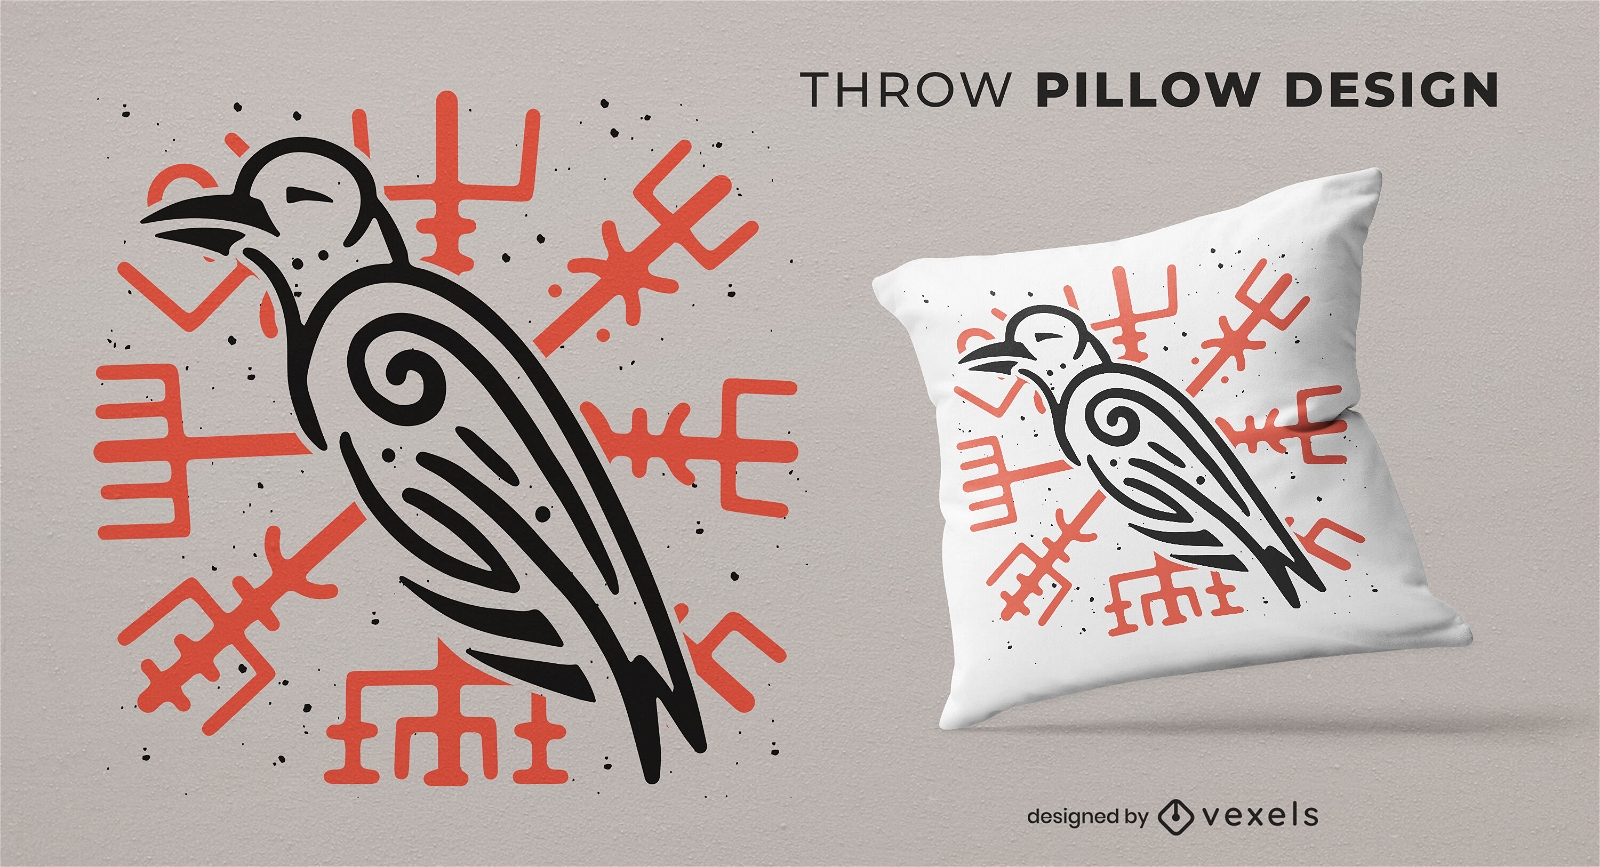 Viking raven throw pillow design